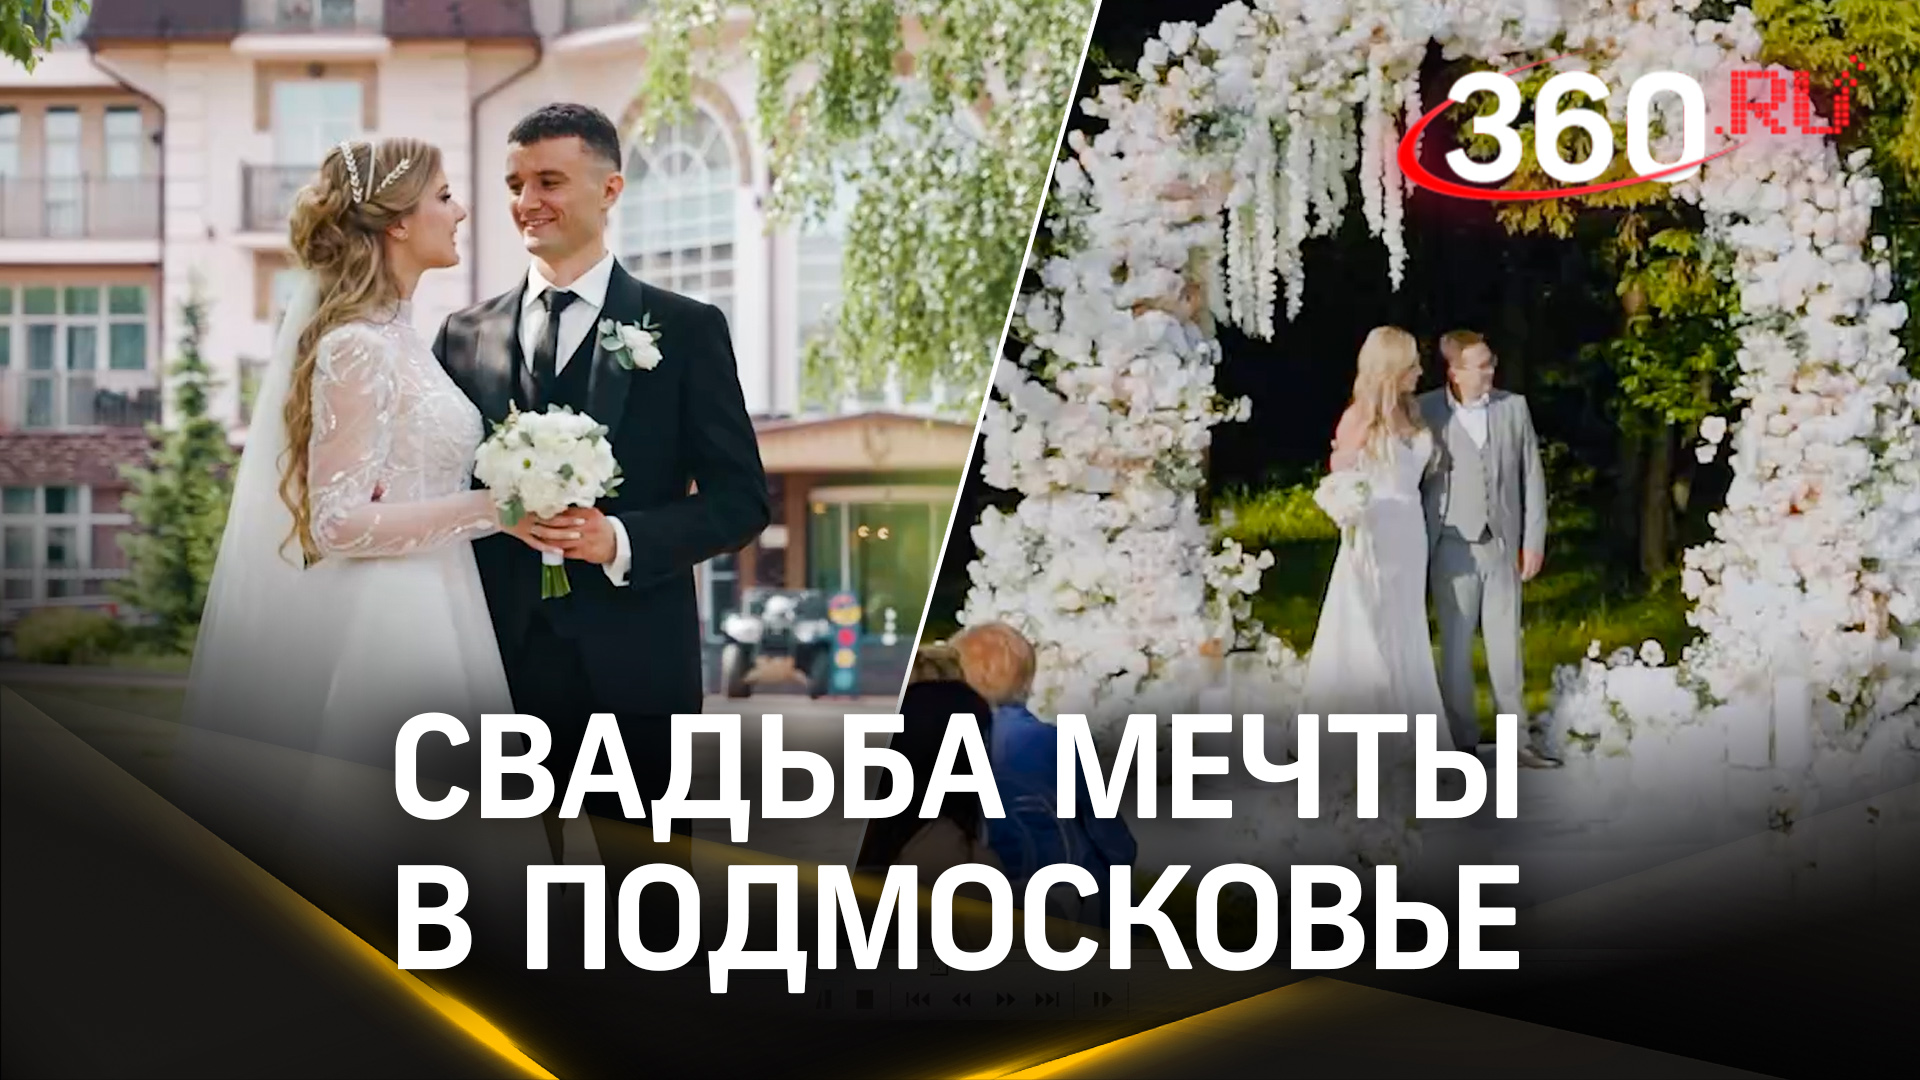 Wedding.mosreg — идеальный сайт для выбора места свадьбы в Подмосковье